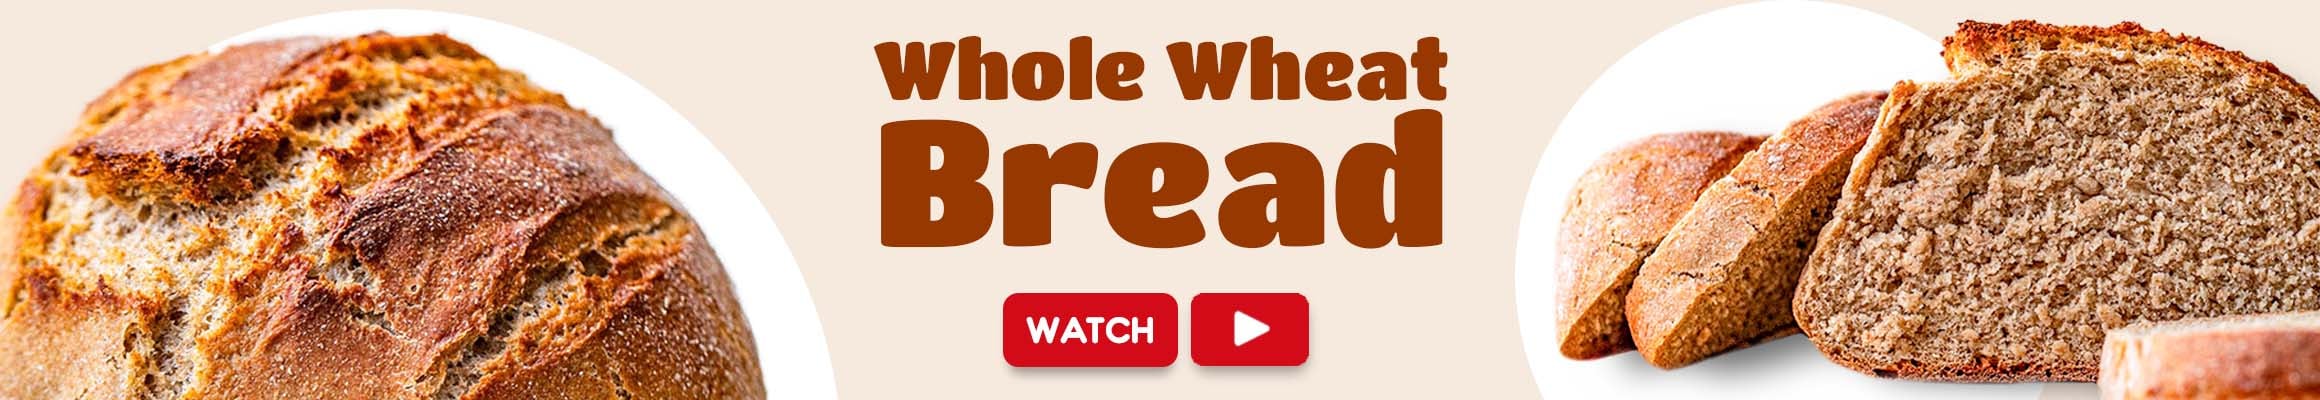 whole-wheat-bread-new-recipe-web